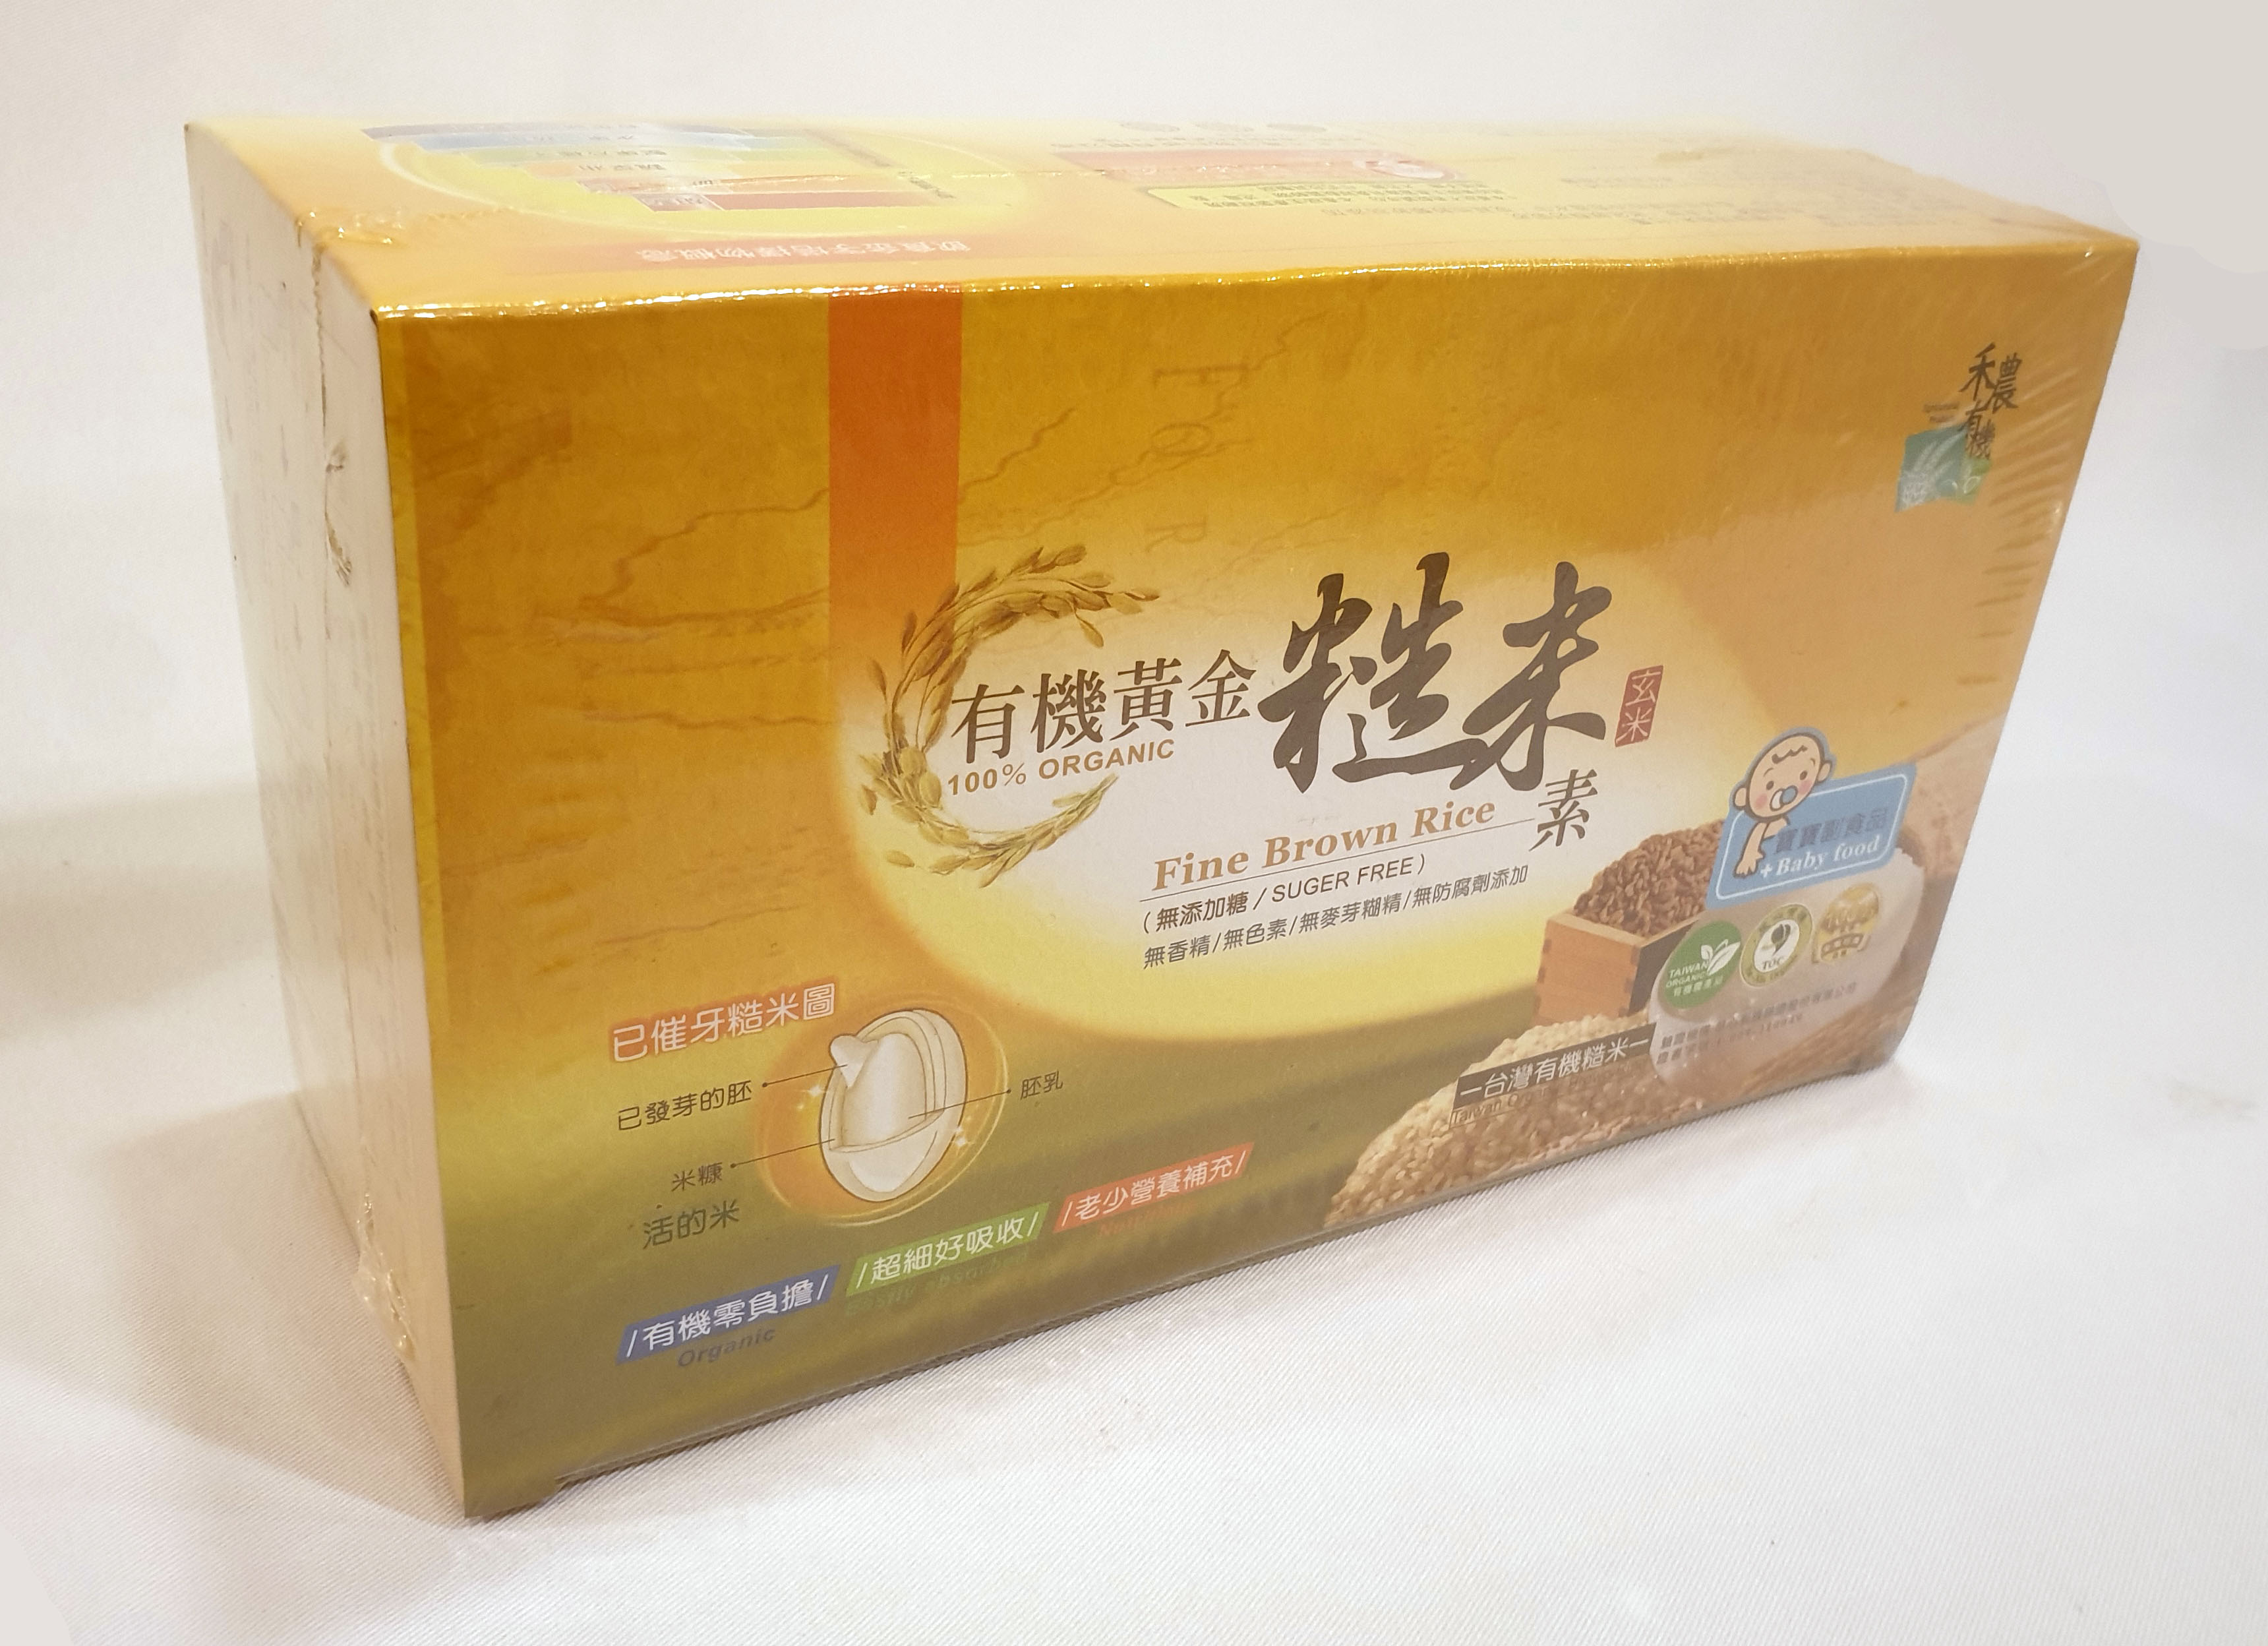 禾農有機 有機黃金糙米素 10克33包/盒 (產地台灣) 兩盒一組優惠